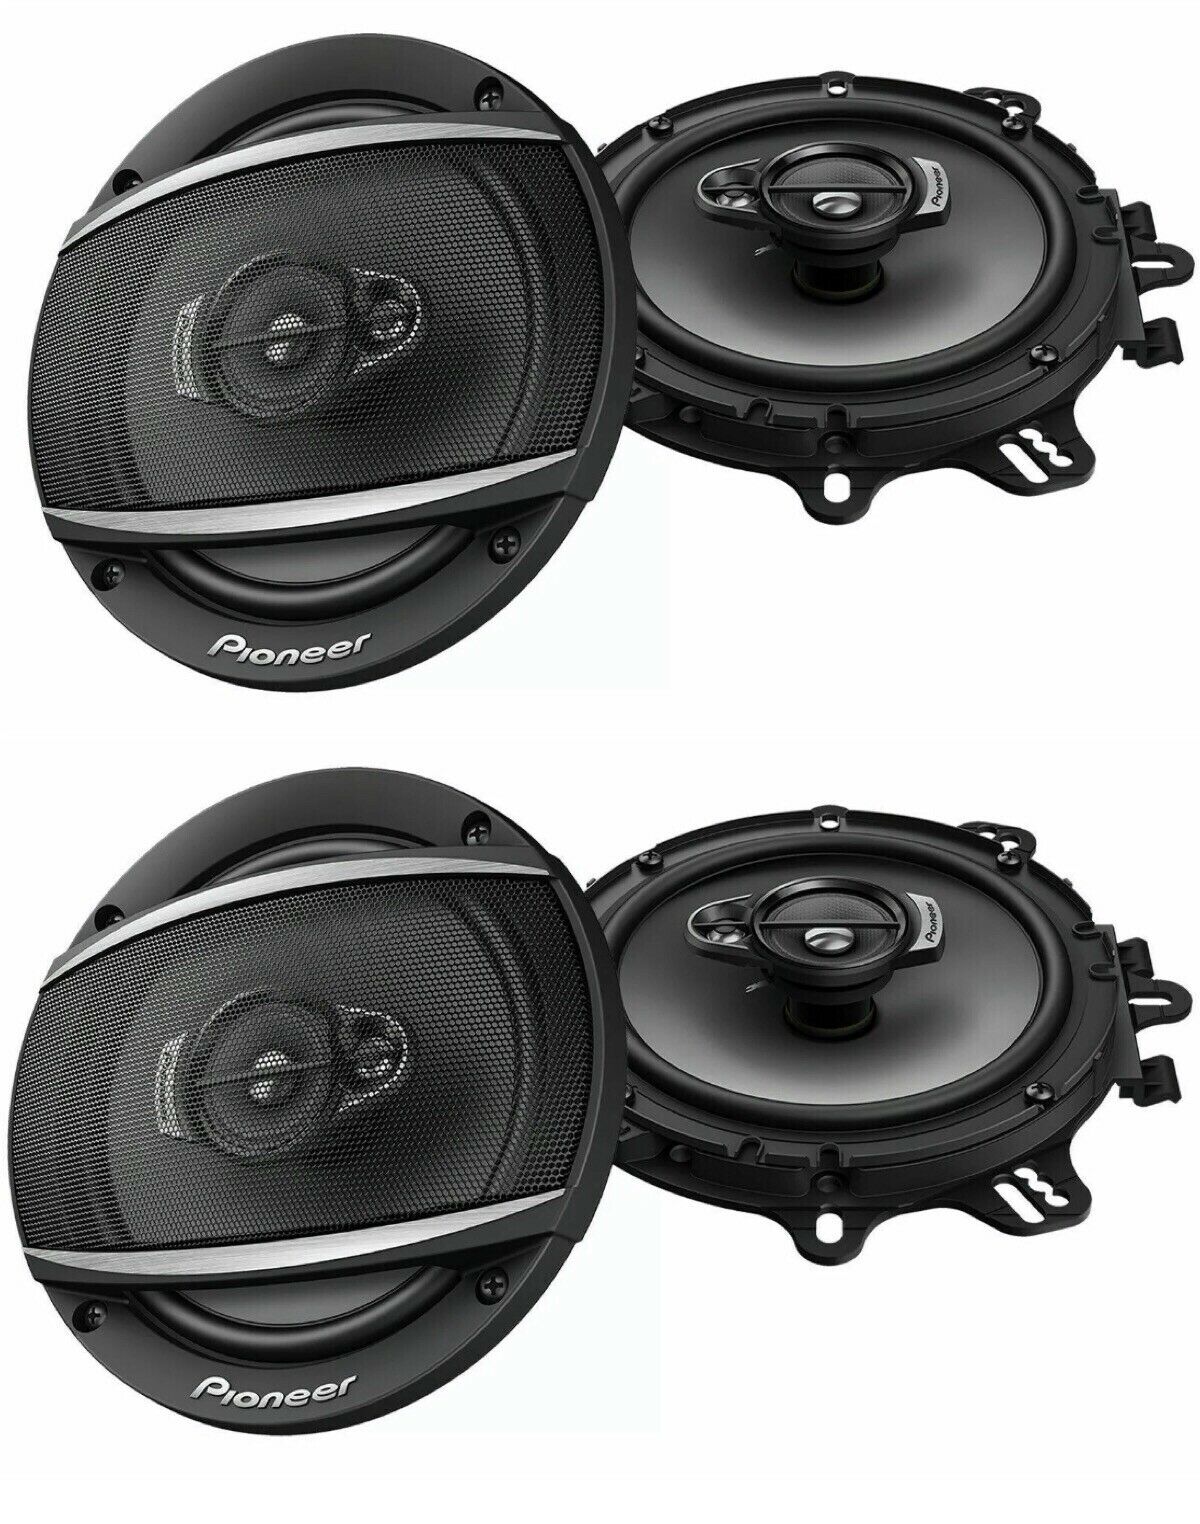 4 Pioneer TS-A1680f 6.5" 350-Watt 4Way Speakers + Metra 72-4568 Speaker Harness for Selected General Motor Vehicles